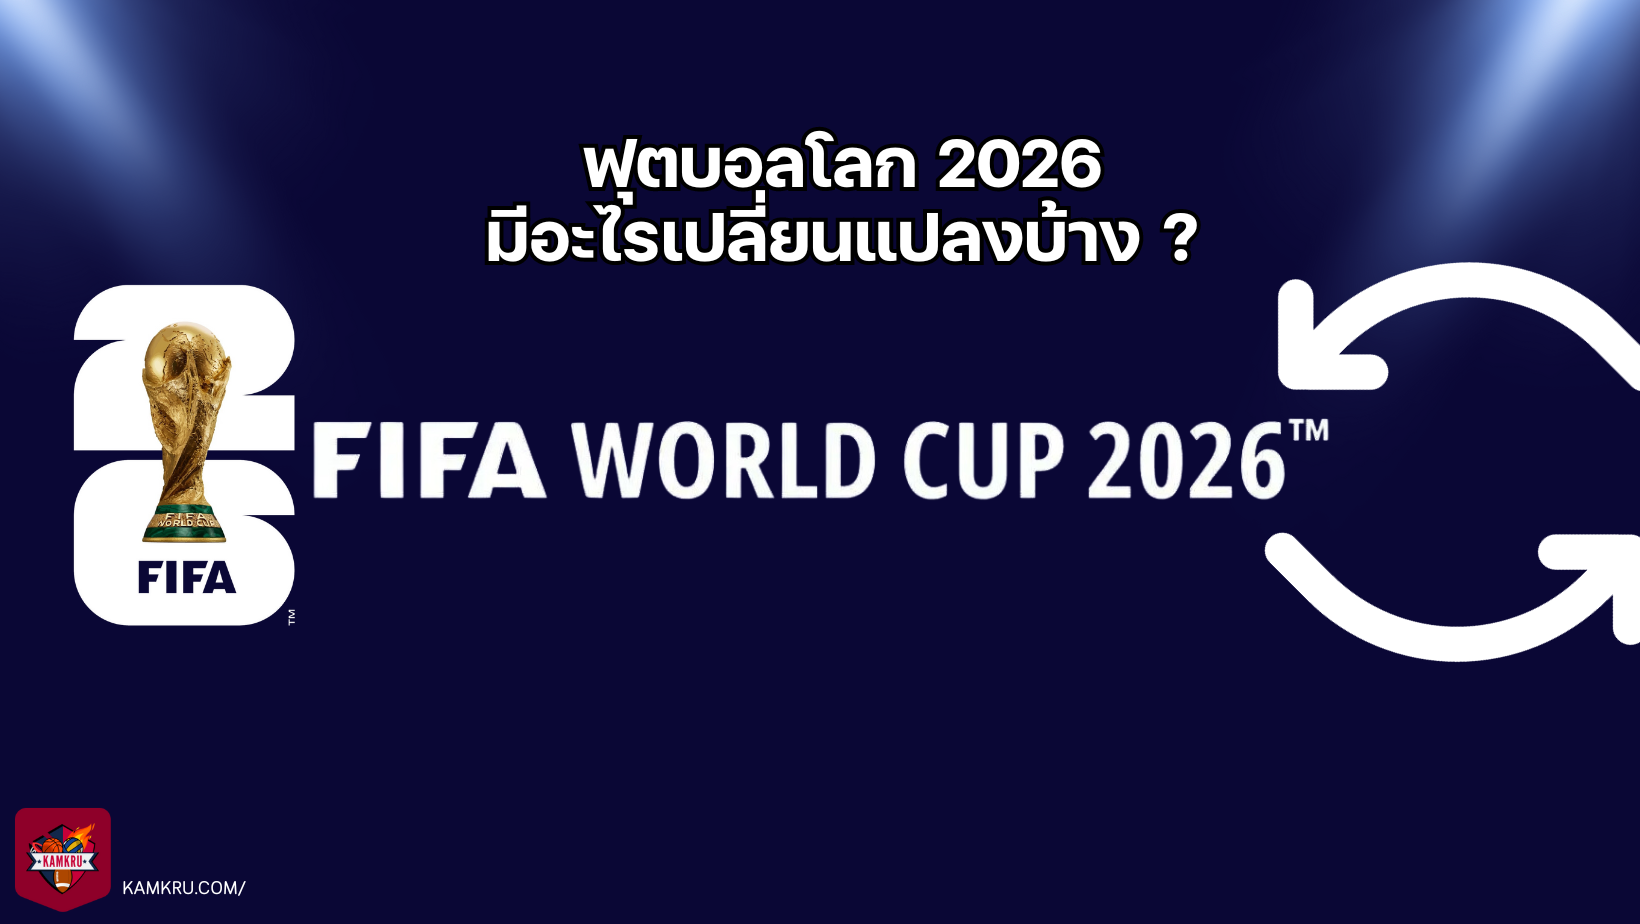 ฟุตบอลโลก 2026 — มีอะไรเปลี่ยนแปลงบ้าง ?